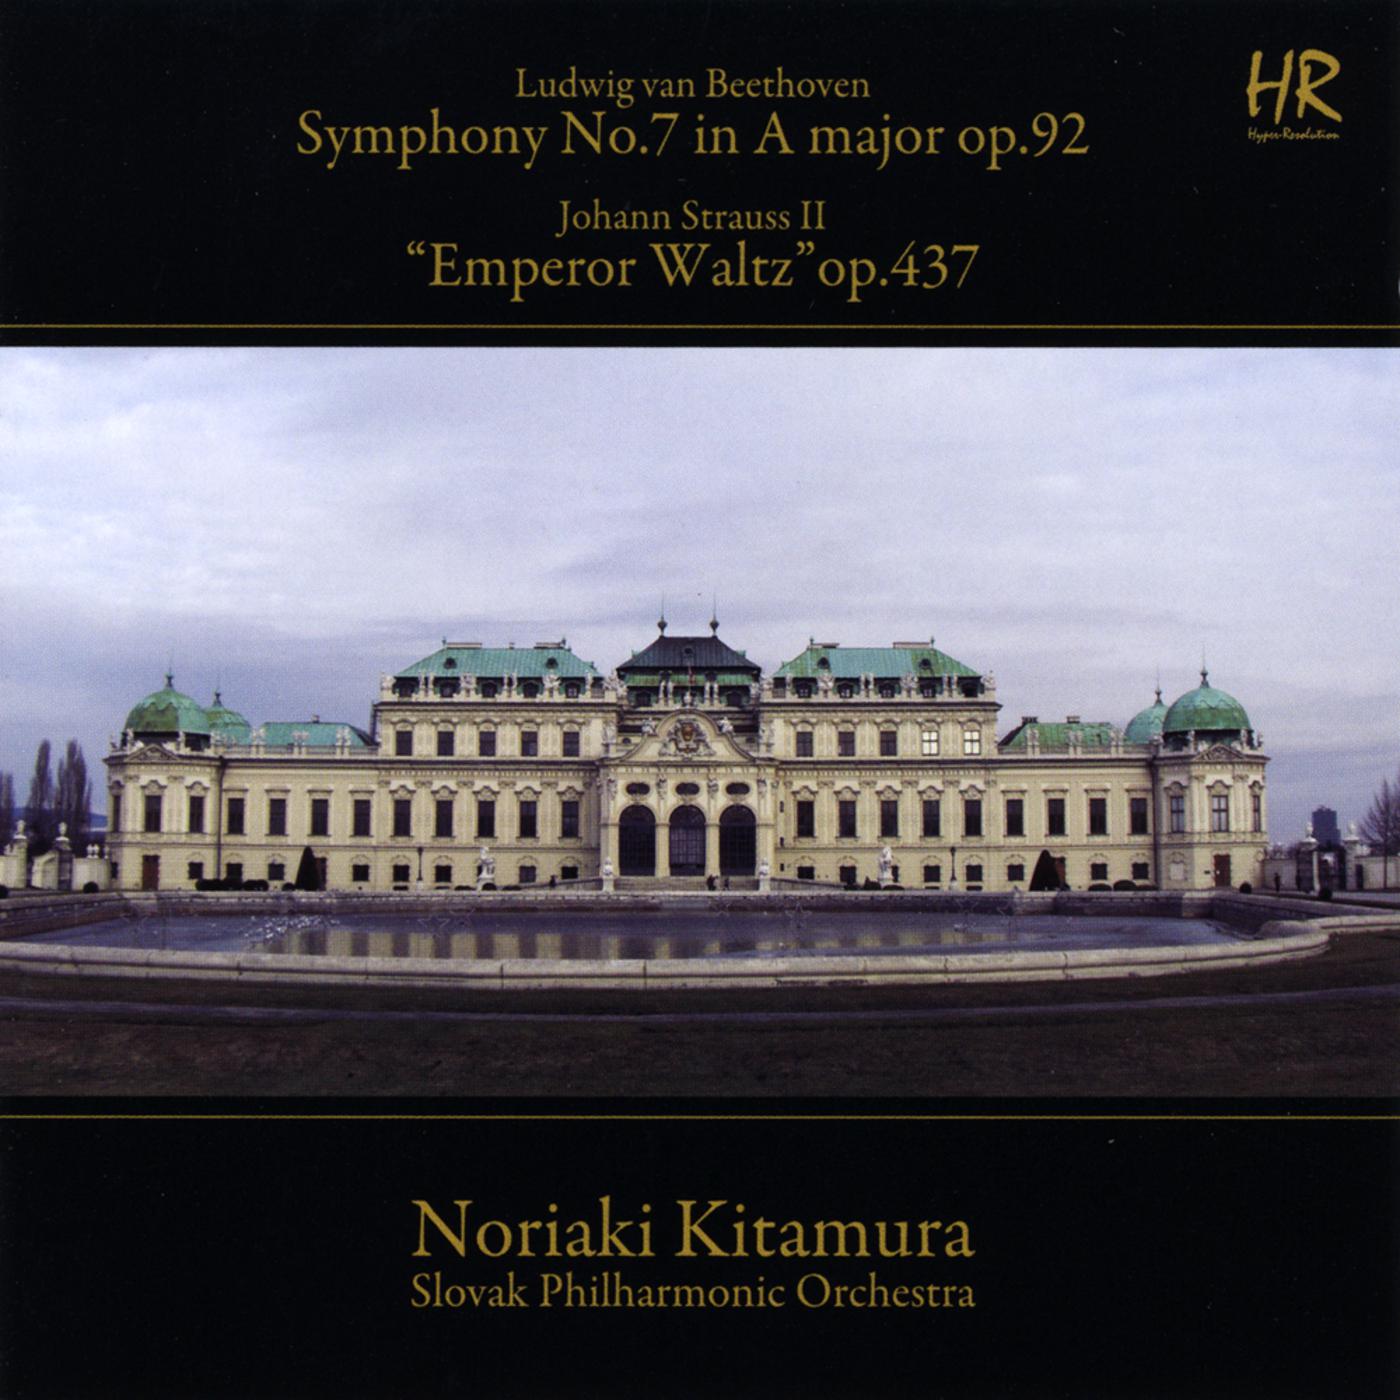 "Emperor Waltz" op. 437